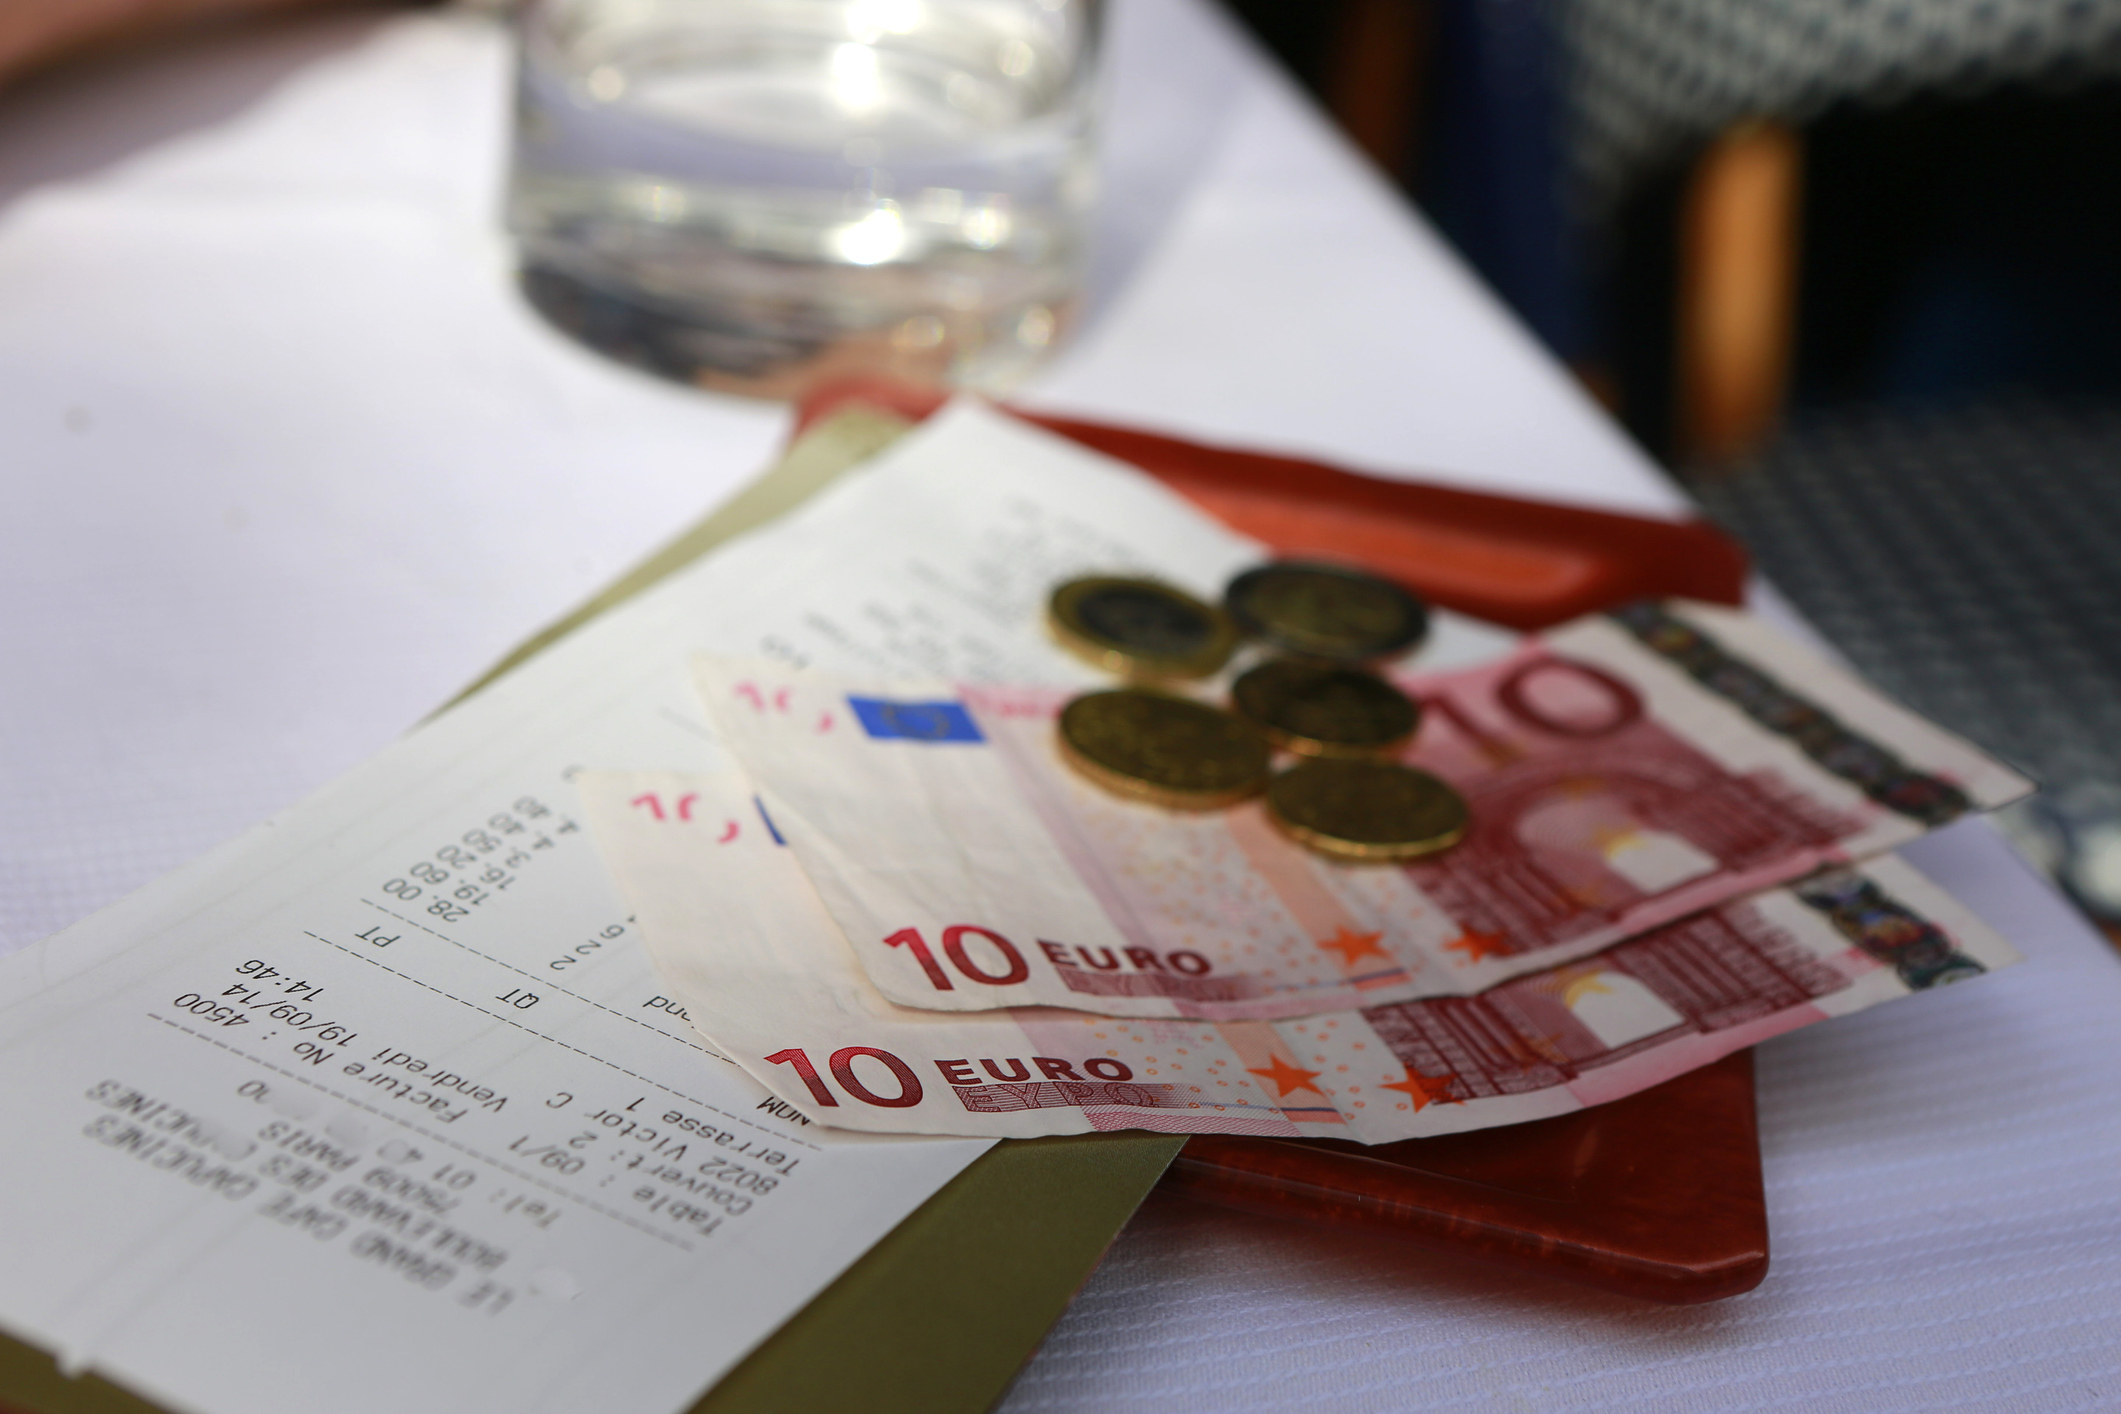 Euros on a table as a tip.